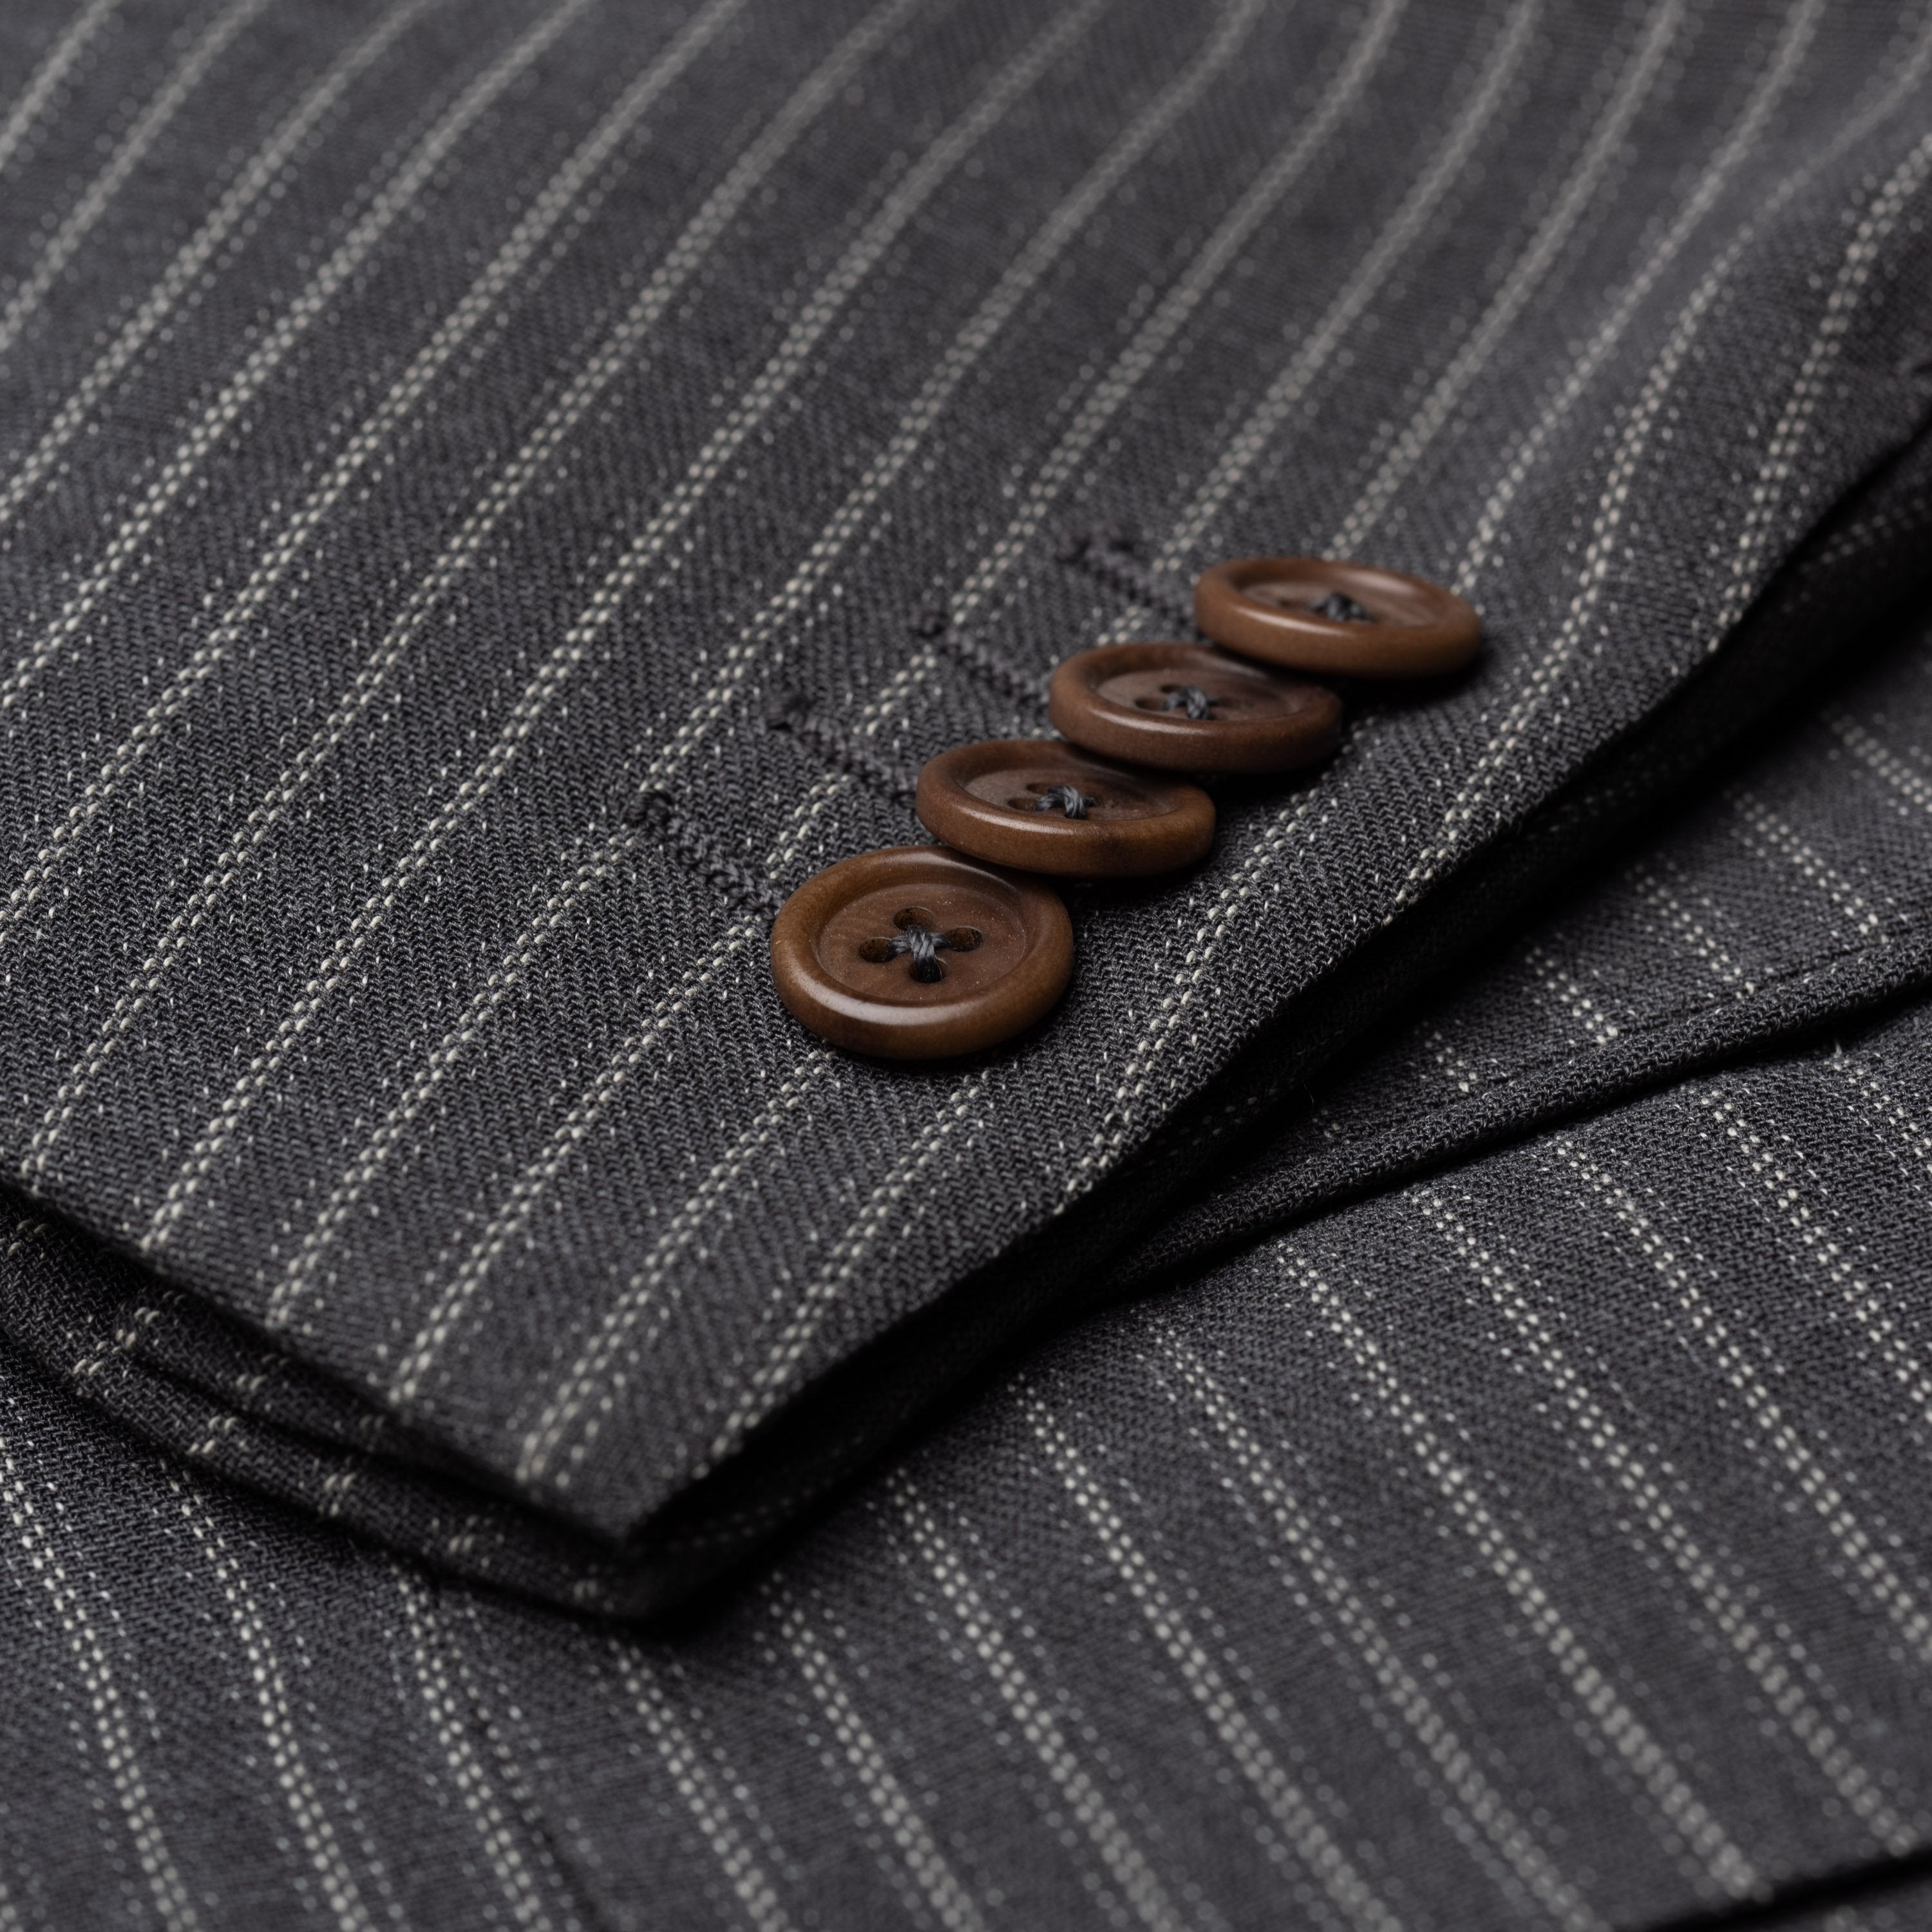 CASTANGIA 1850 Gray Striped Wool-Cotton 5 Button Jacket EU 52 NEW US 42 CASTANGIA